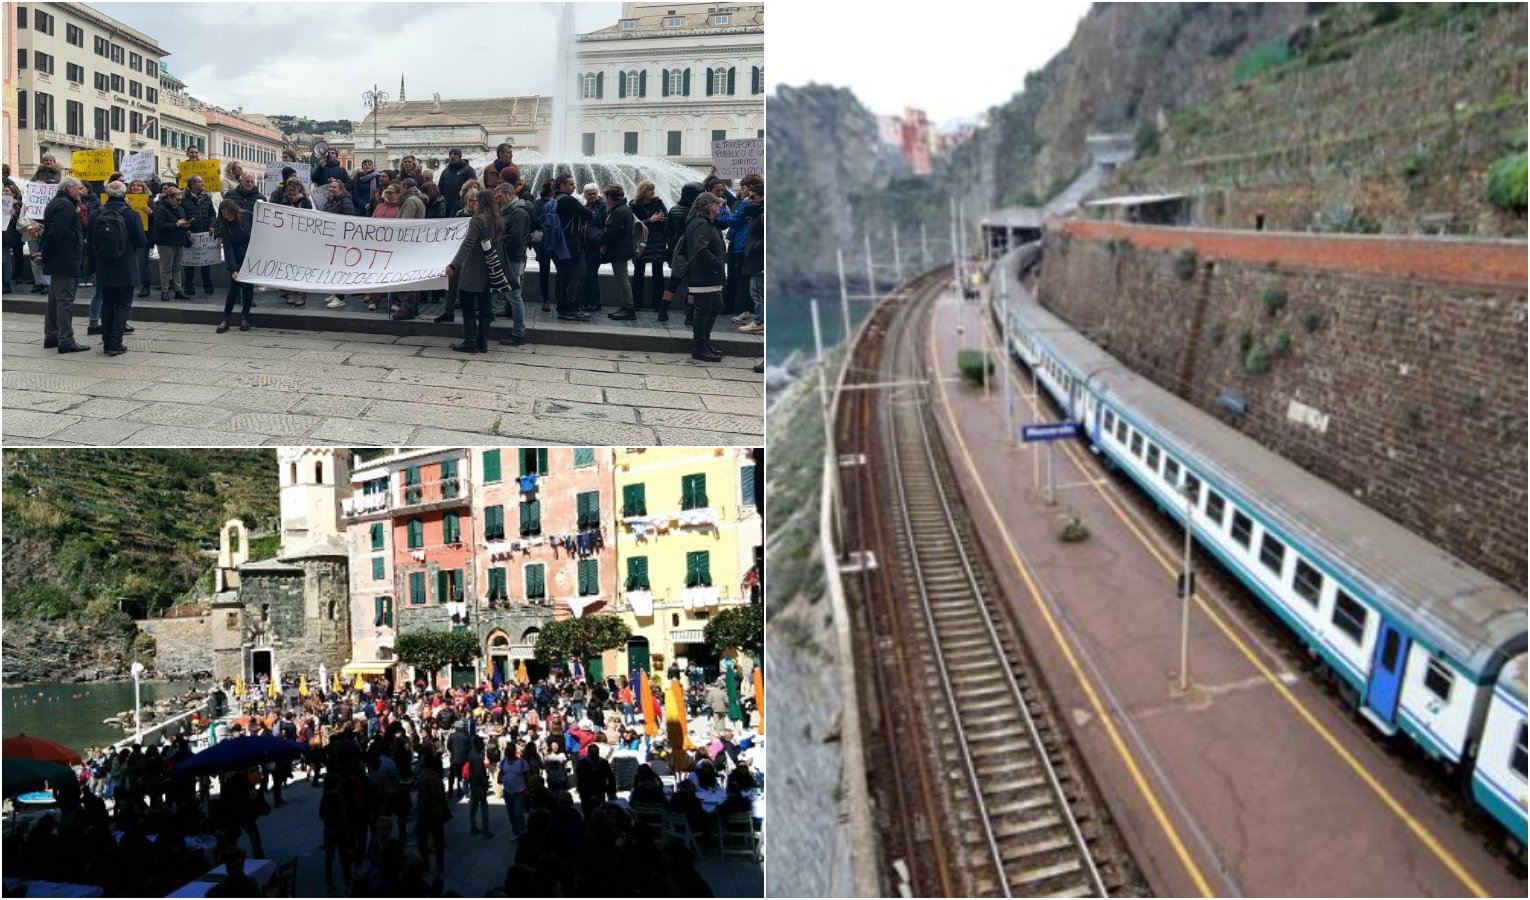 Tariffe treni Cinque Terre, protesta in Regione: accolte alcune richieste